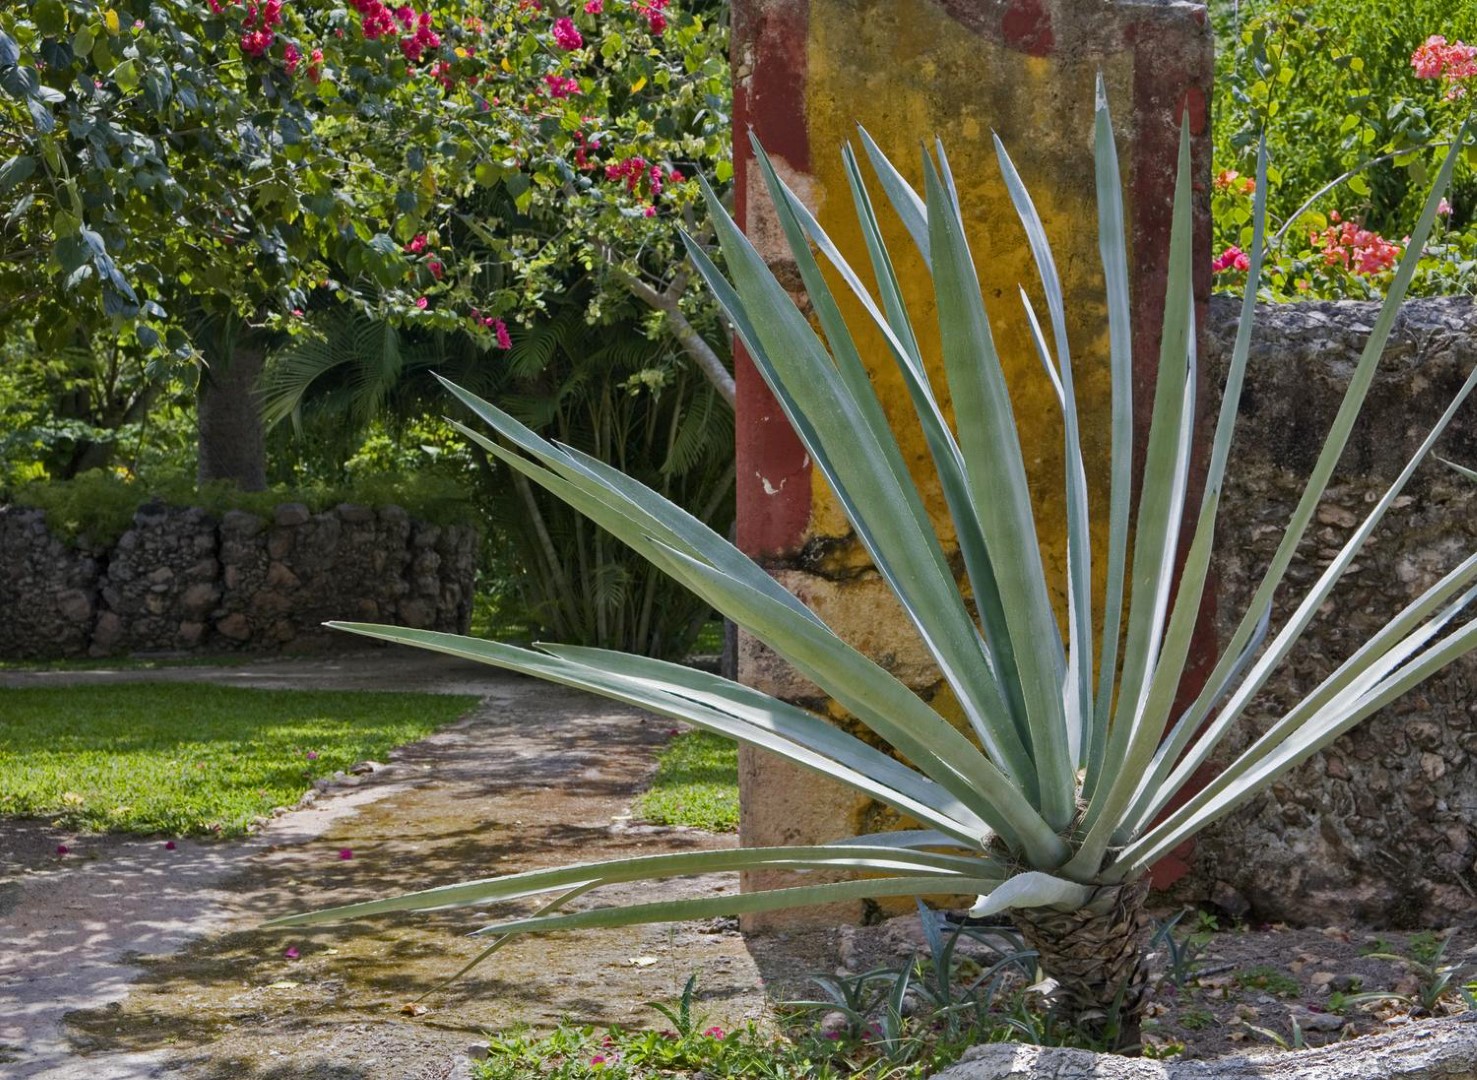 Cactus at Hacienda San Jose